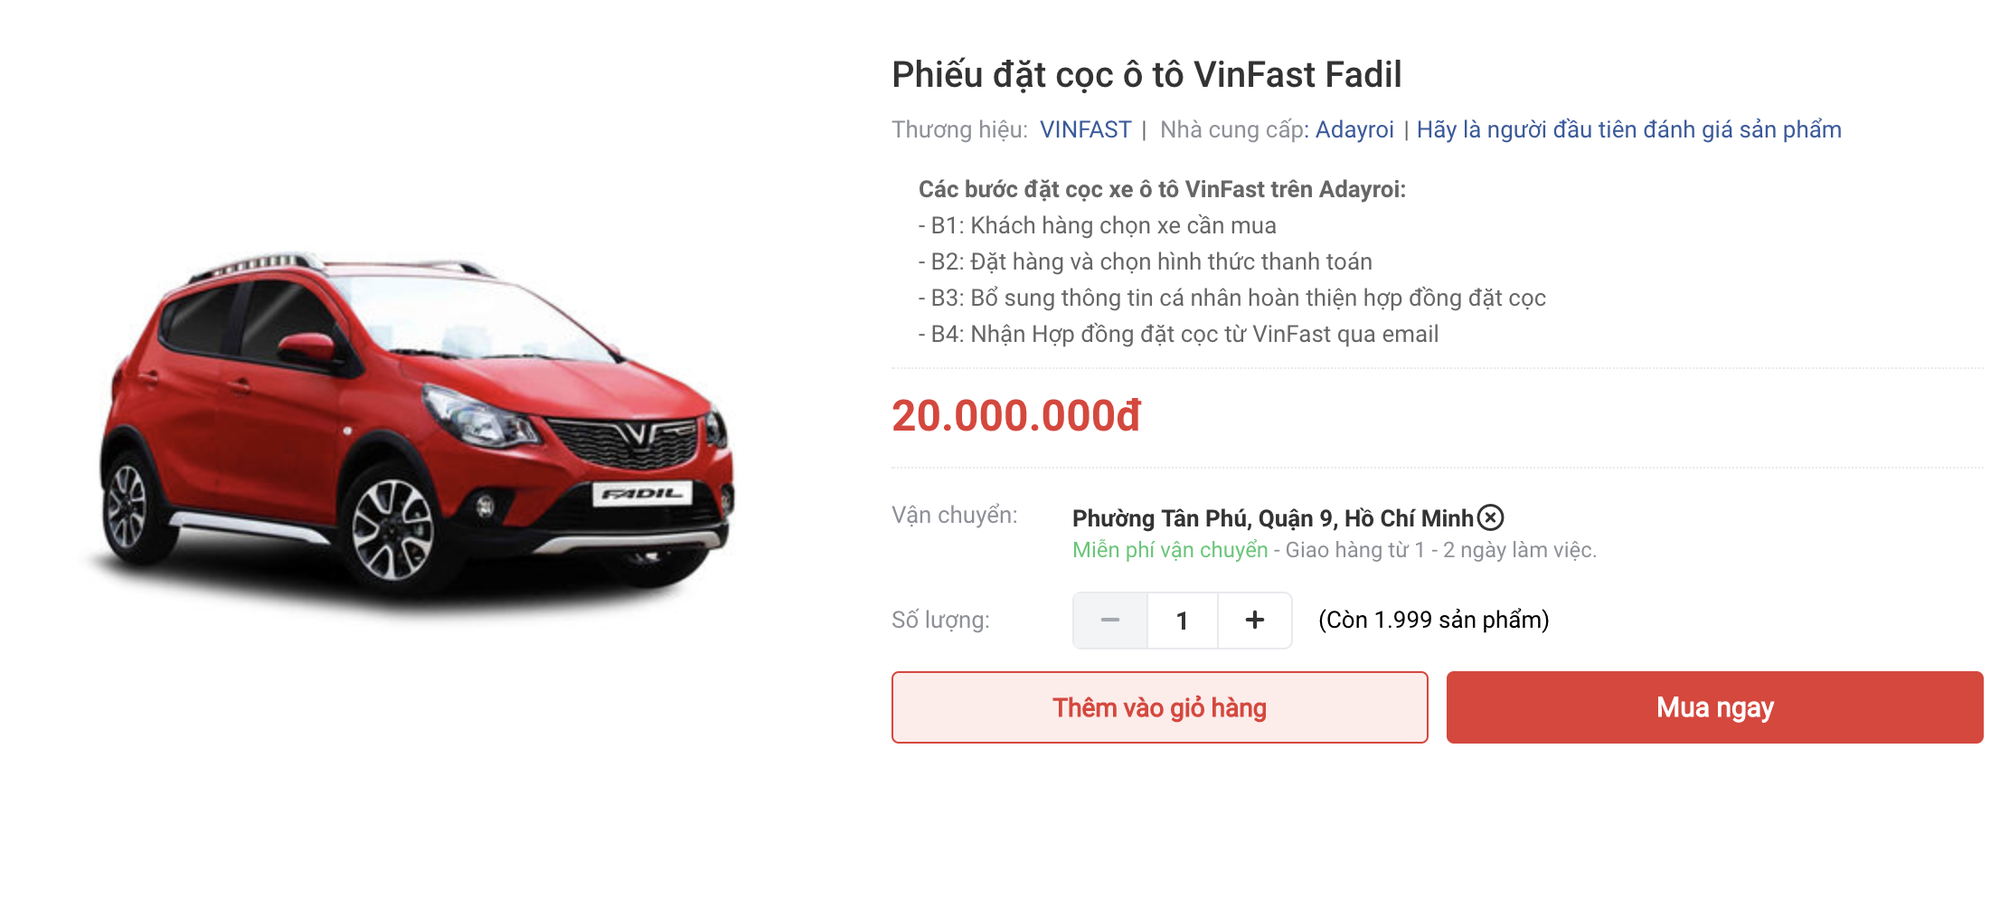 Vinfast là hãng xe ô tô đang rất được ưa chuộng hiện nay nhờ sự kết hợp giữa thương hiệu Việt Nam và công nghệ hiện đại. Mỗi chiếc xe đều mang đậm phong cách Việt, hãy xem hình ảnh để cảm nhận!